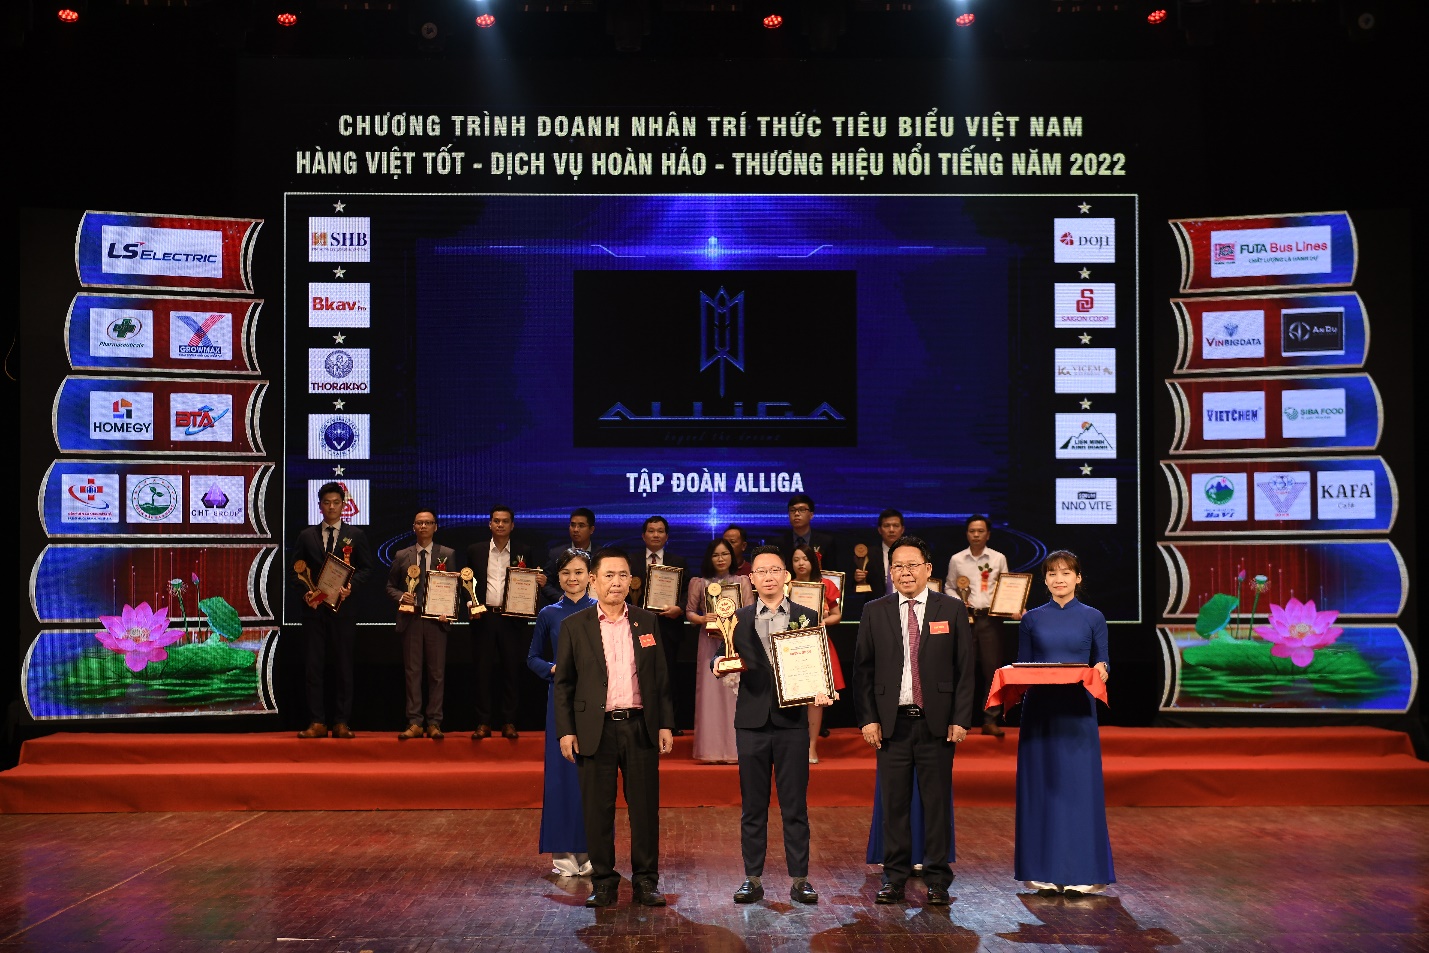 Chủ tịch tập đoàn Alliga – ông Bùi Việt Quân nhận giải “Top 20 thương hiệu nổi tiếng hàng đầu năm 2022”